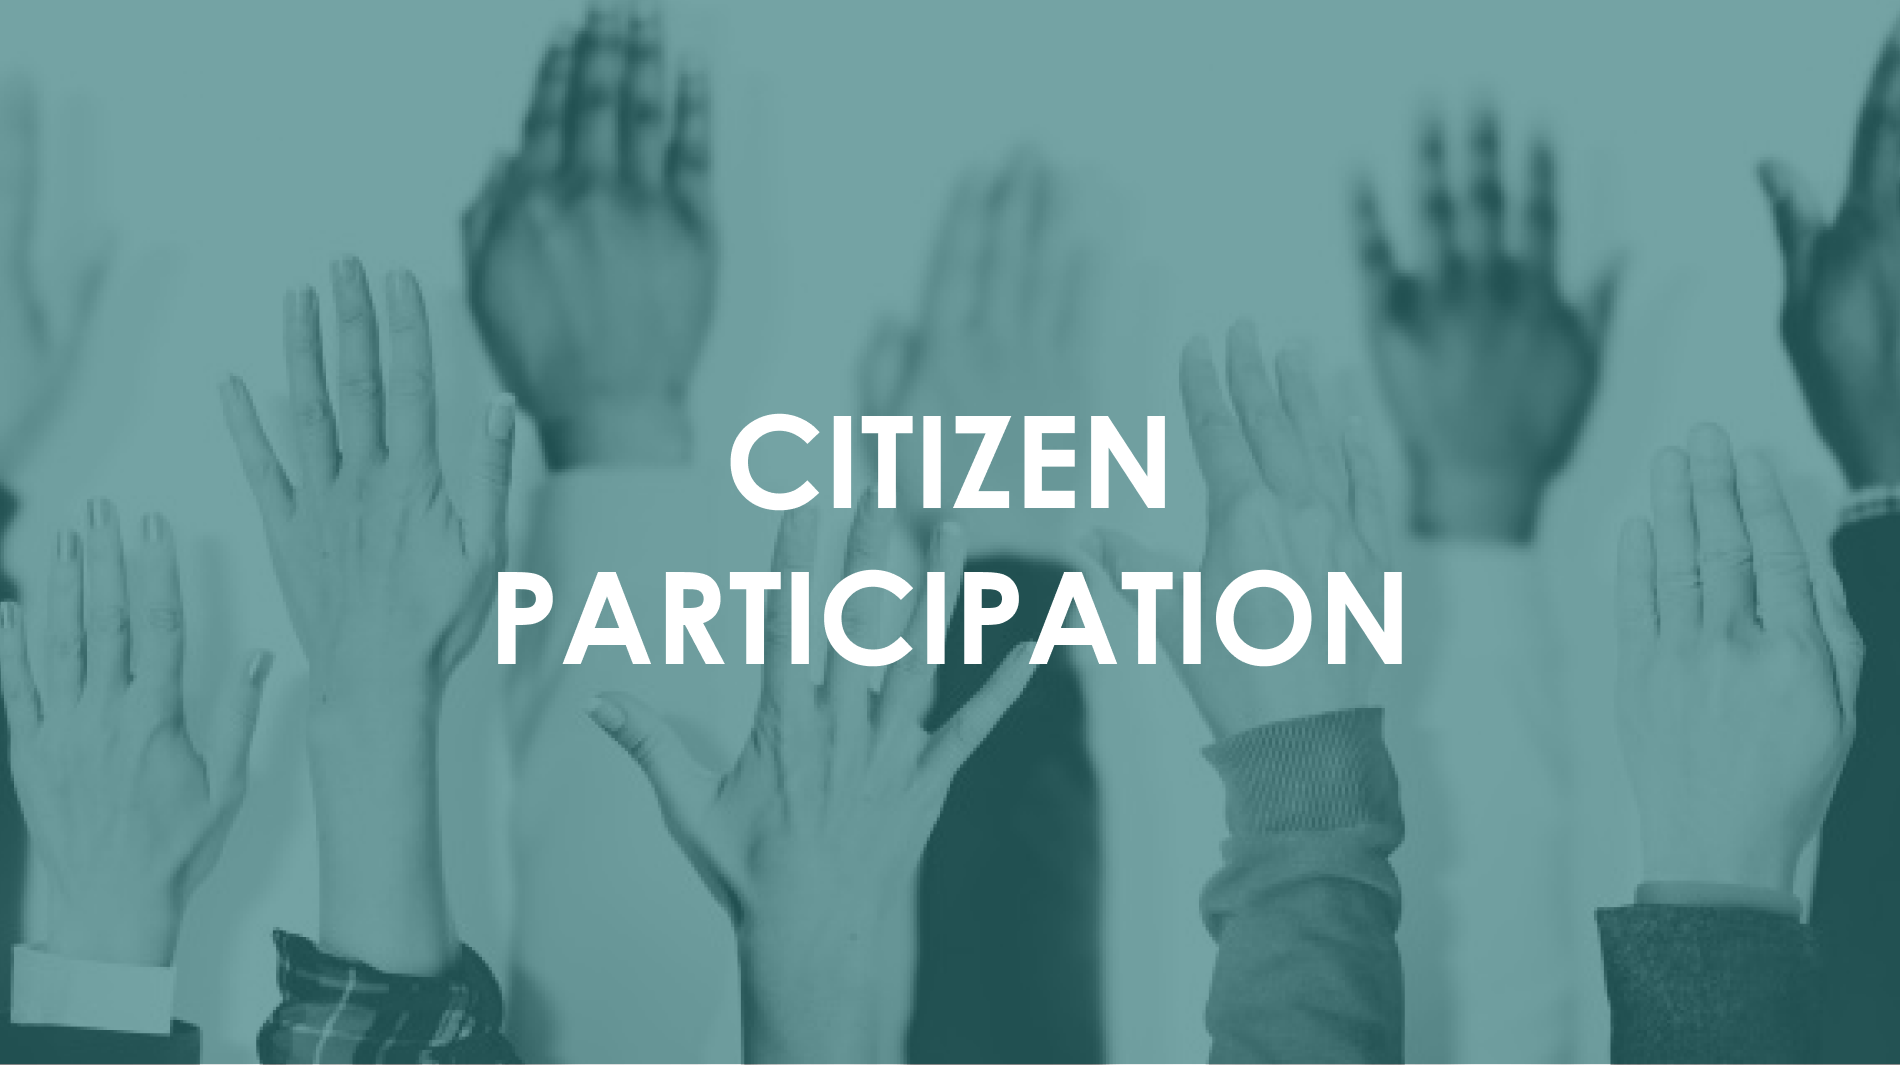 Citizen participation